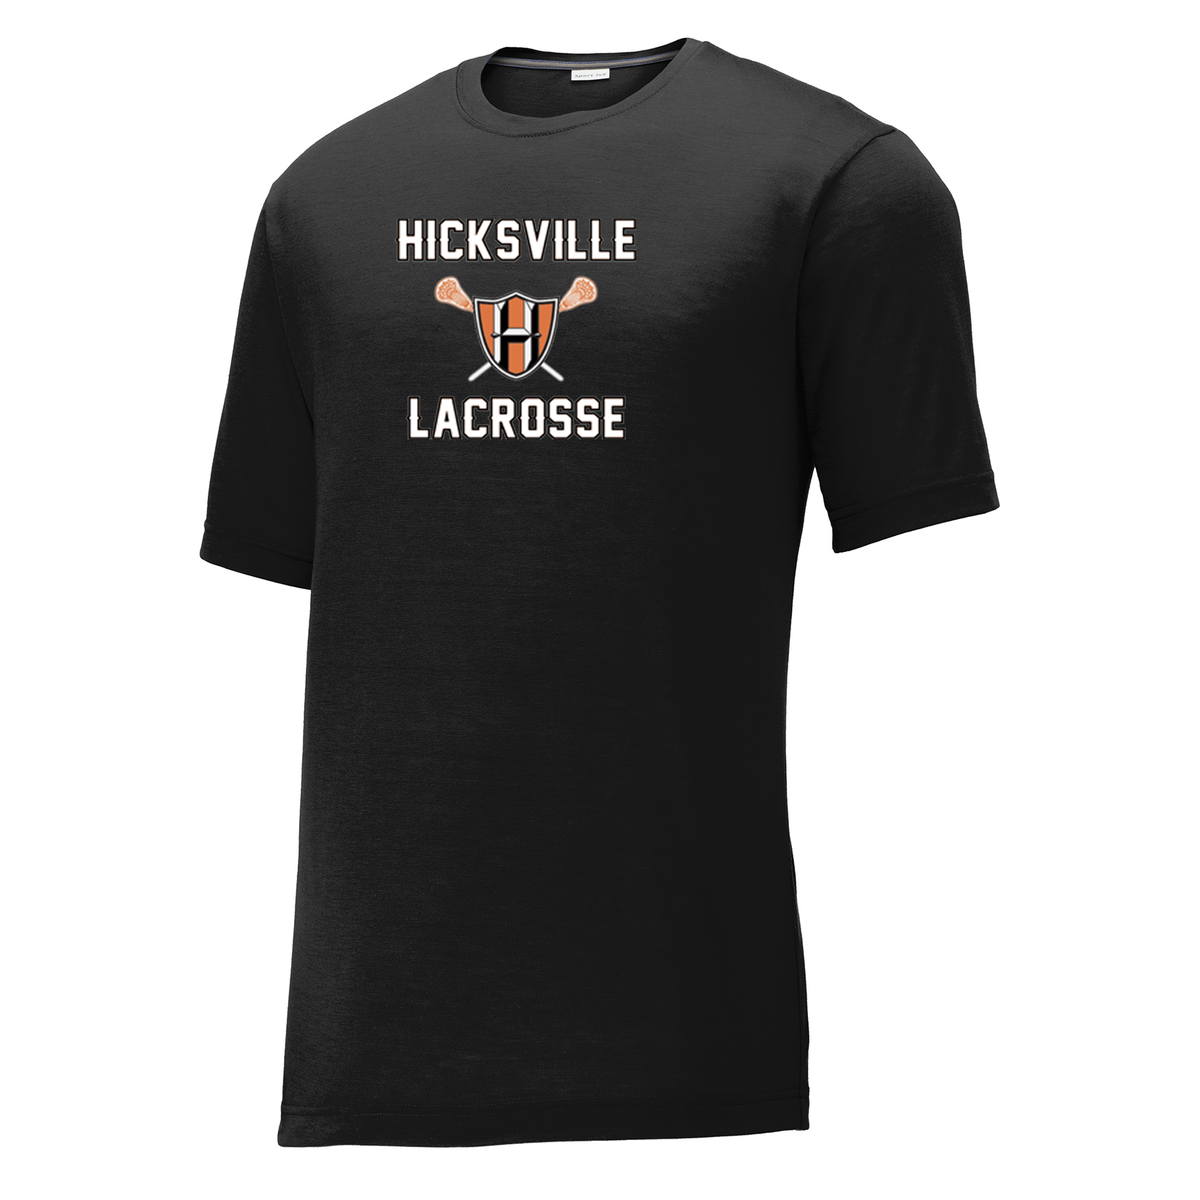 Hicksville Lacrosse  CottonTouch Performance T-Shirt